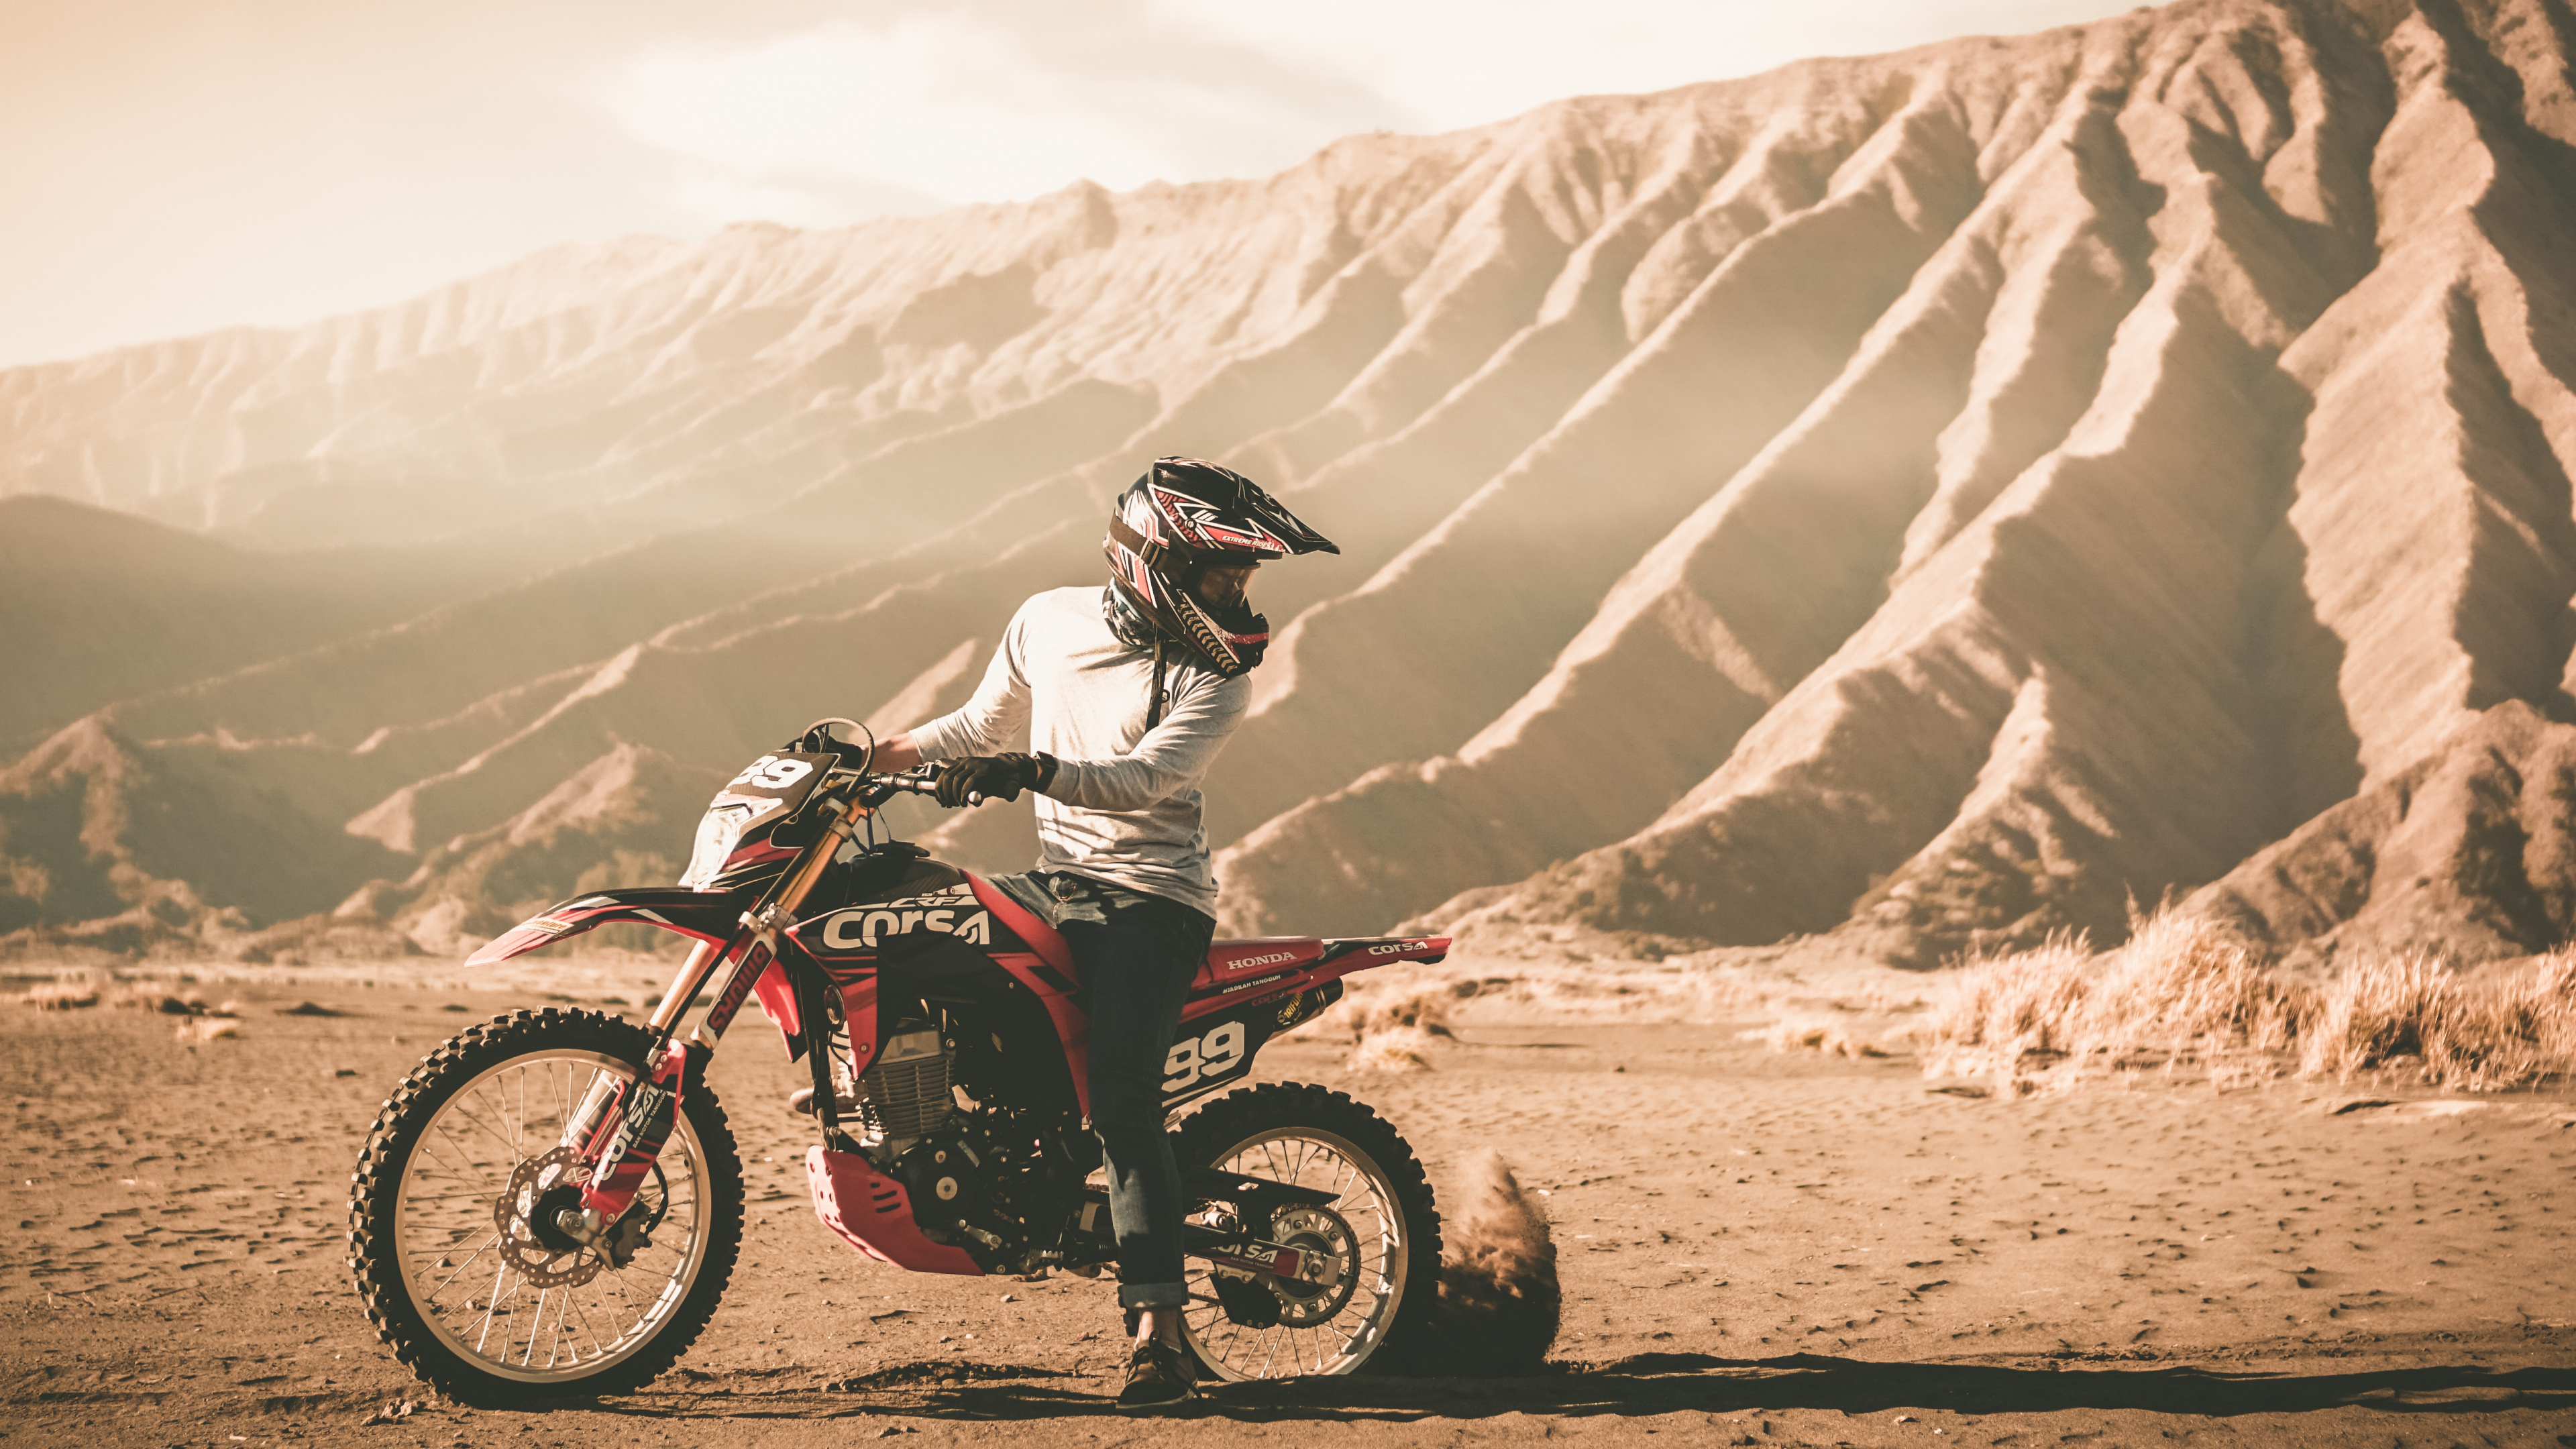 Hombre Montando Motocross Dirt Bike en Camino de Tierra Durante el Día. Wallpaper in 3840x2160 Resolution